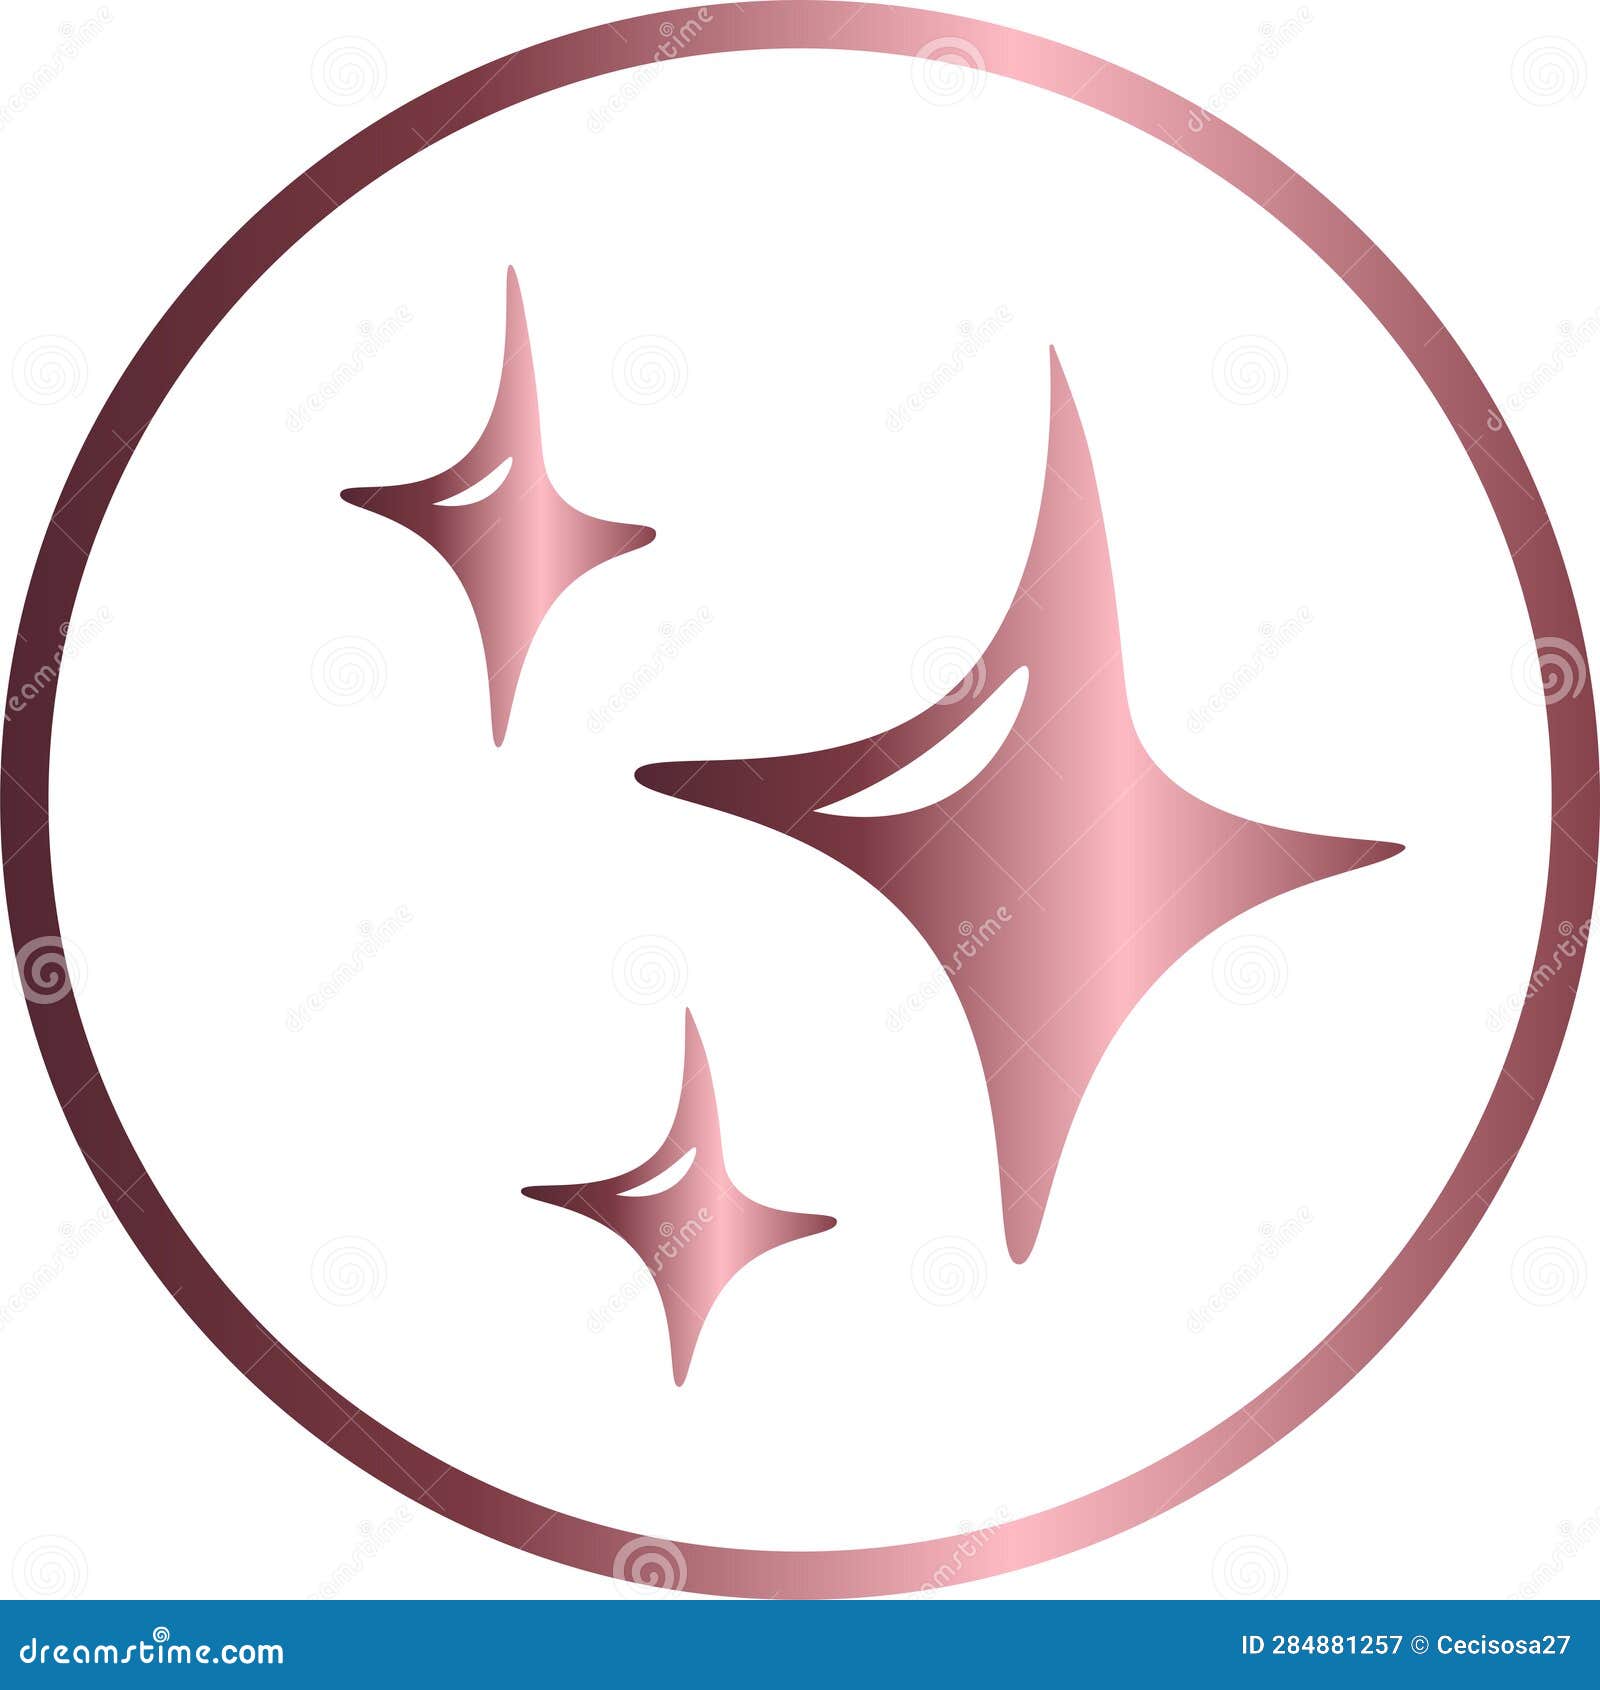 circular star icon, pink metallic